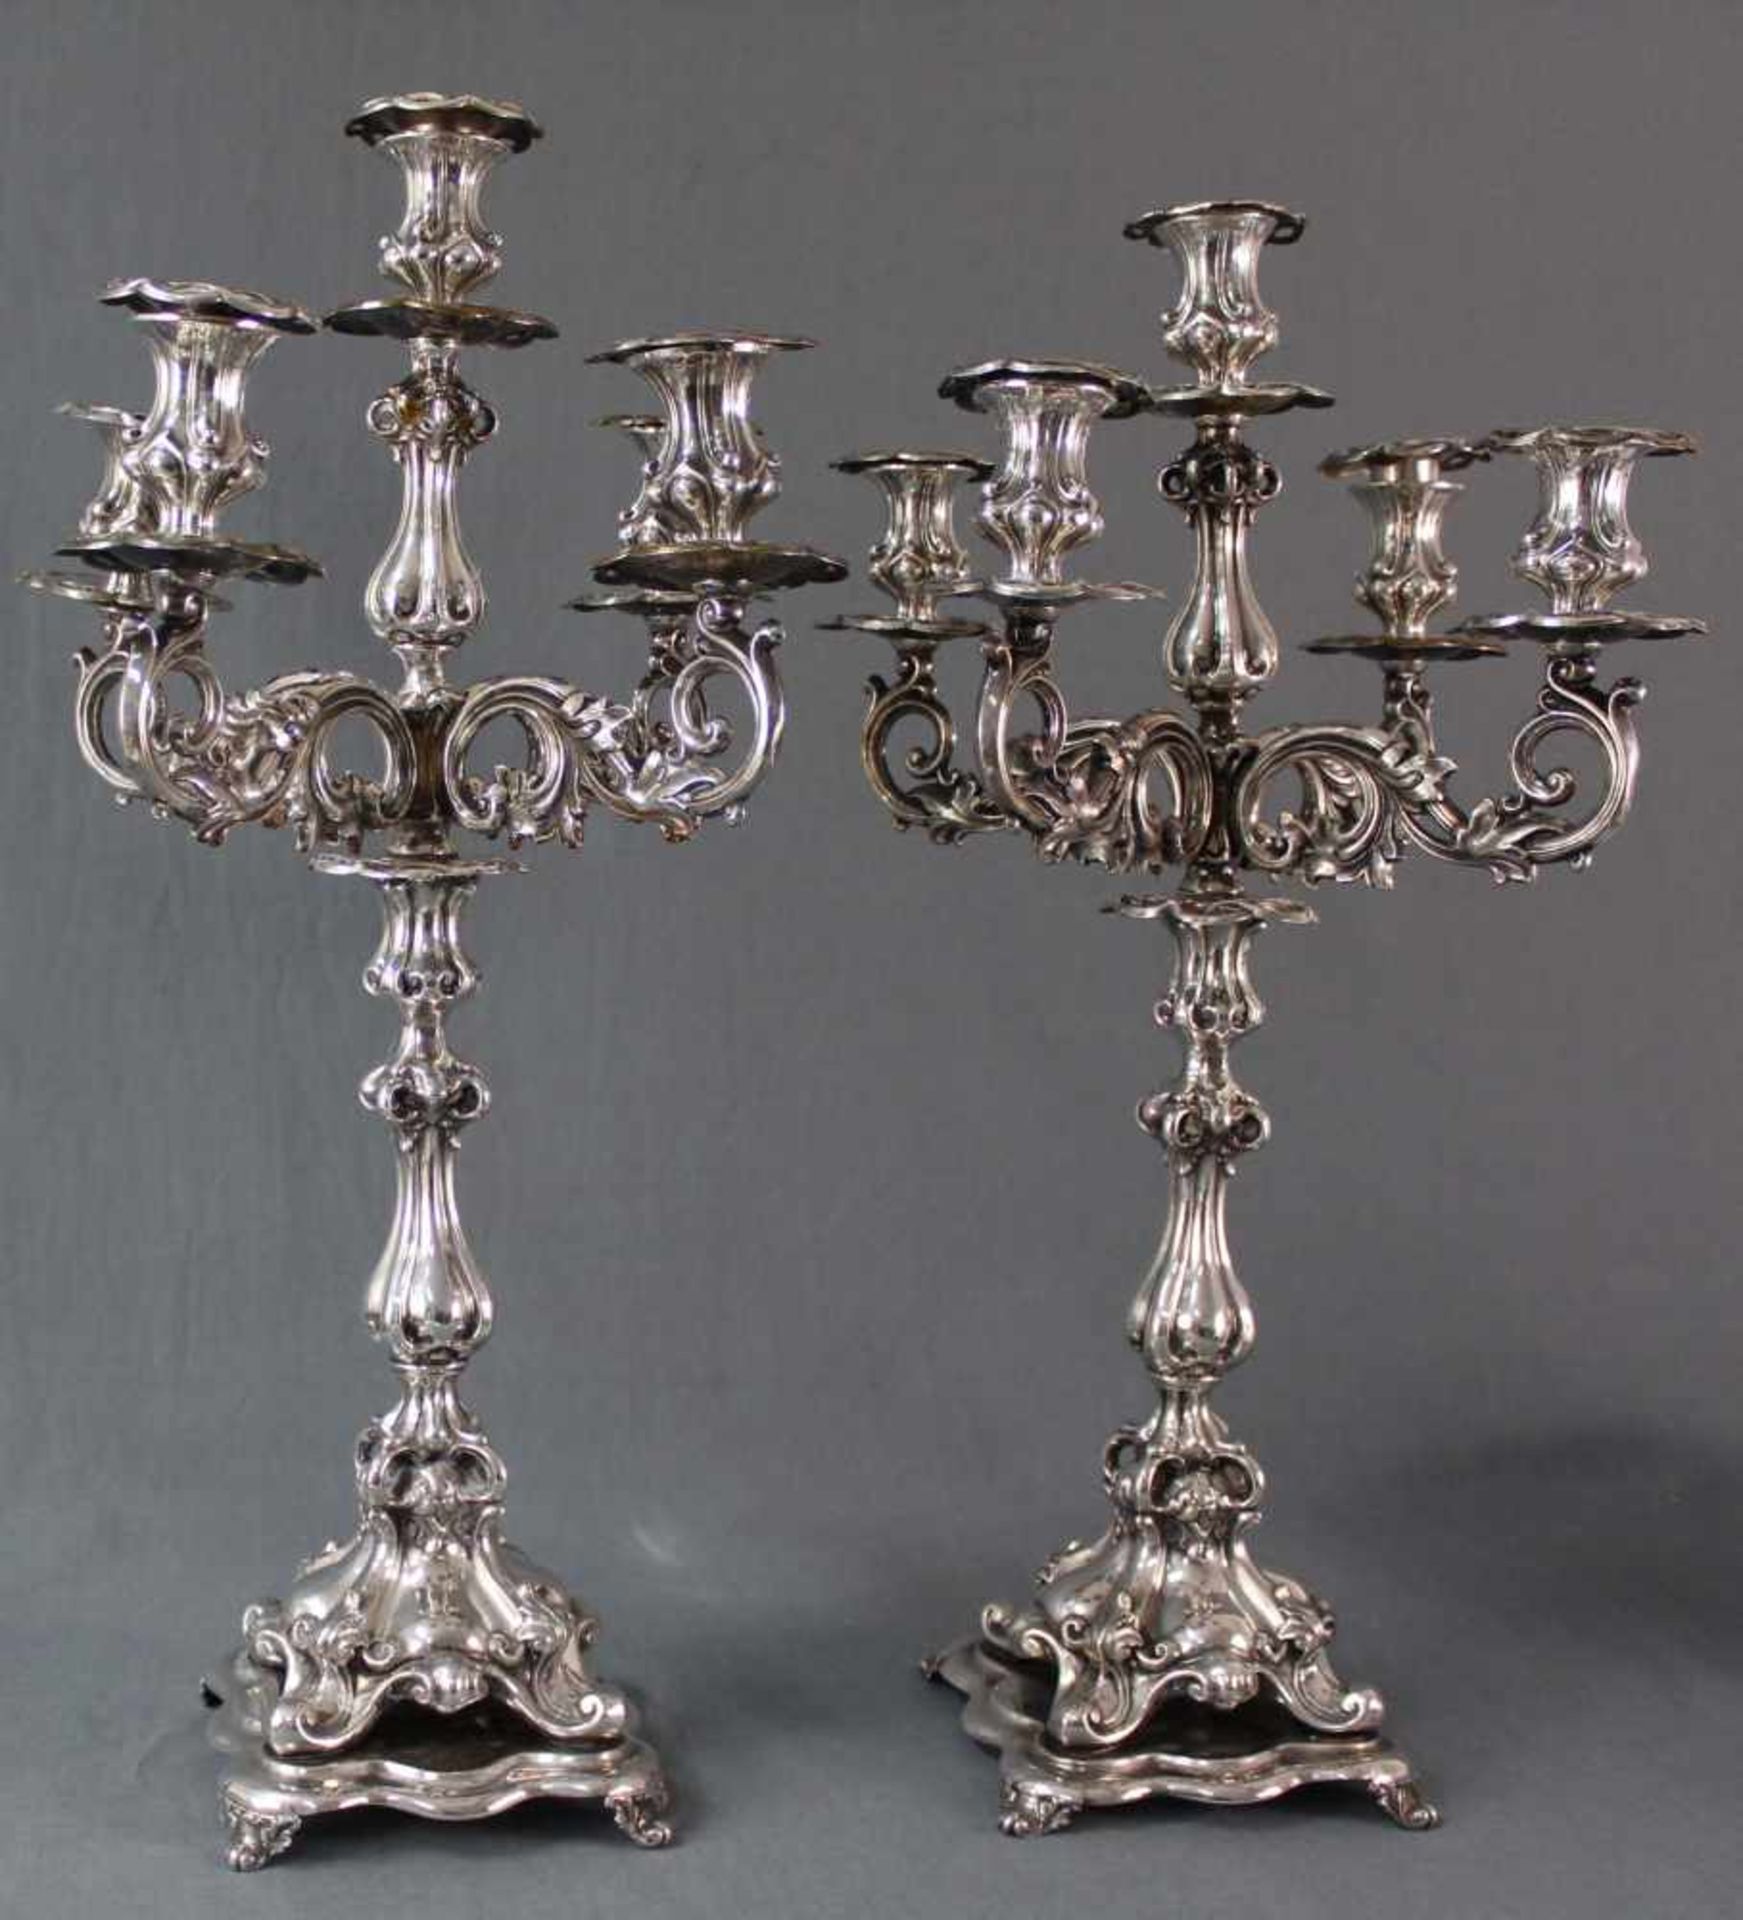 Ein Paar Kerzenleuchter, versilbert, 5- flammig.2827 Gramm Brutto. 52 cm hoch. Eine Fassung ersetzt. - Image 10 of 17